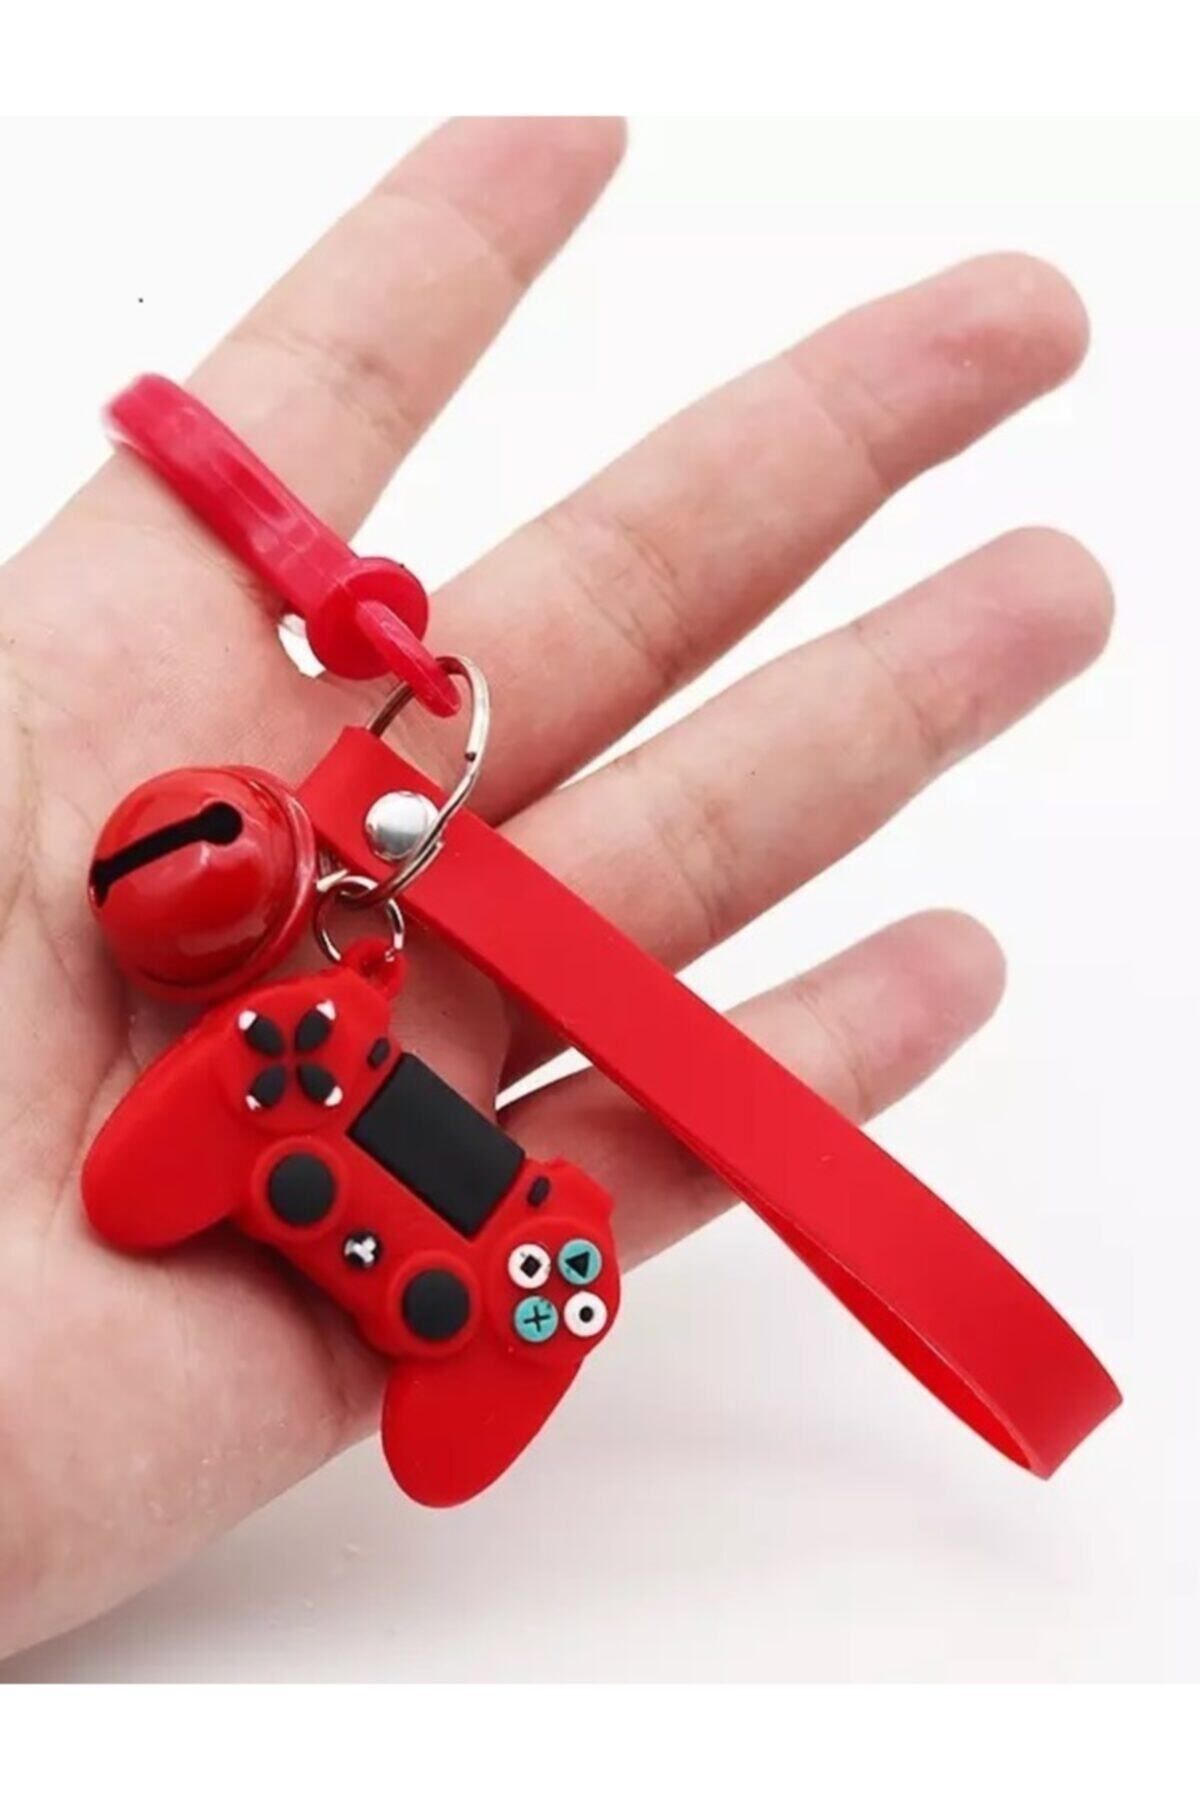 Kiwii Kırmızı Ps4 Playstation Zilli Konsol Joystick Anahtarlık